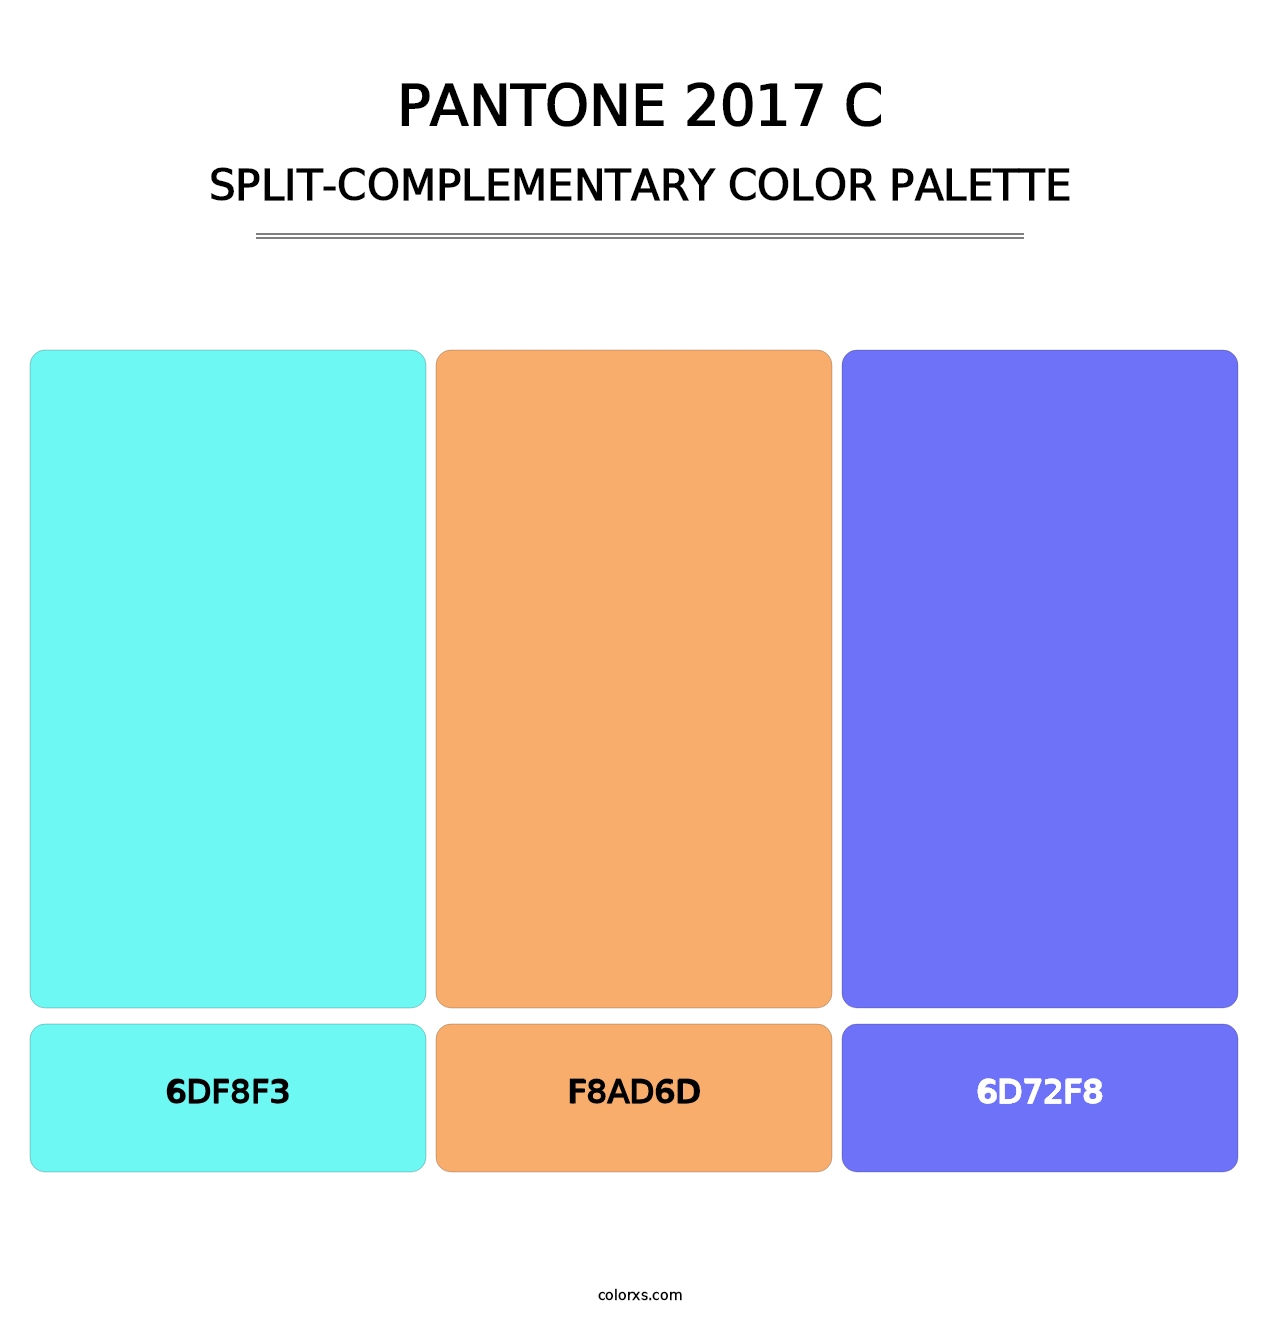 PANTONE 2017 C - Split-Complementary Color Palette